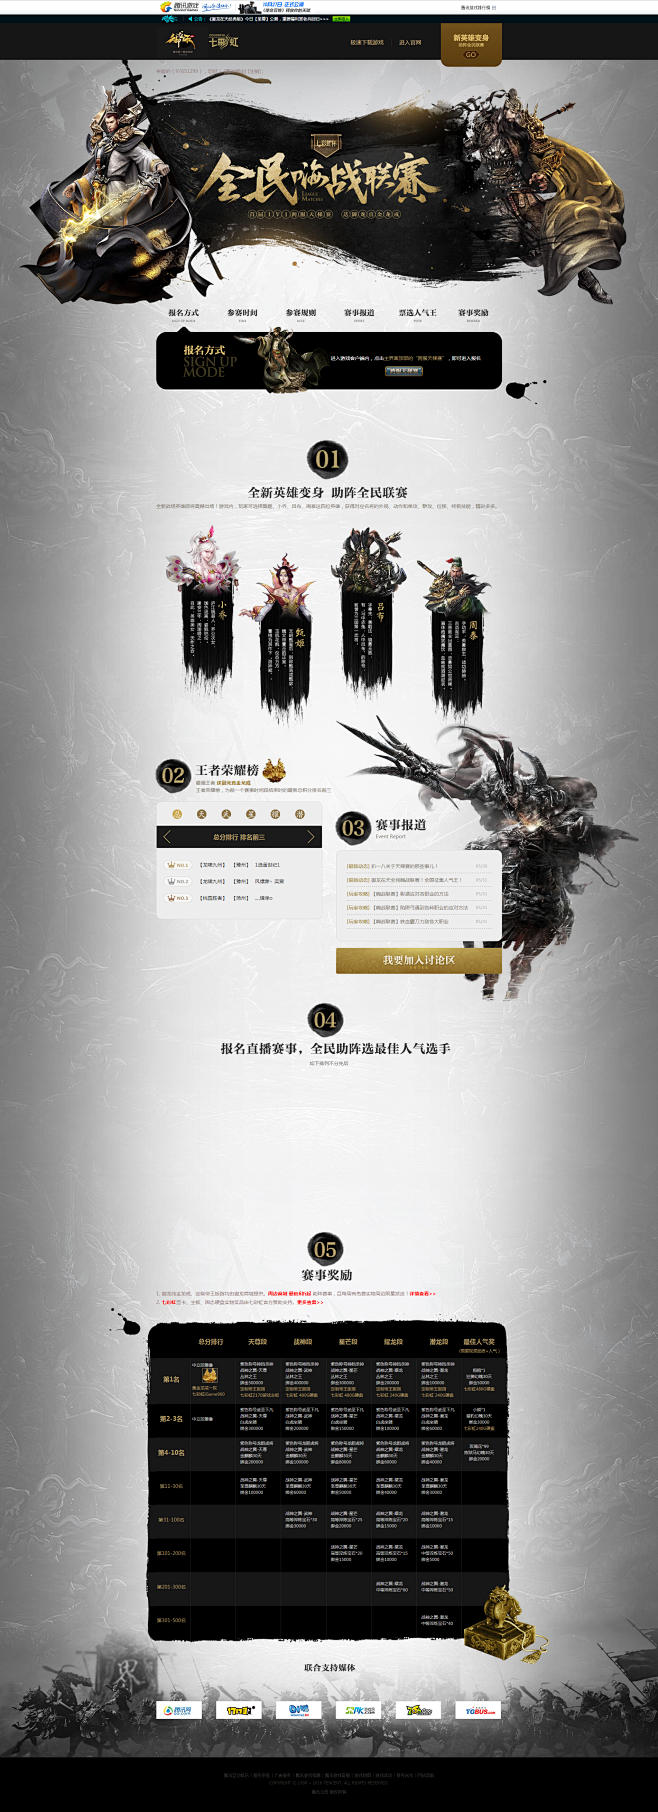 全民嗨战联赛-御龙在天官方网站-腾讯游戏